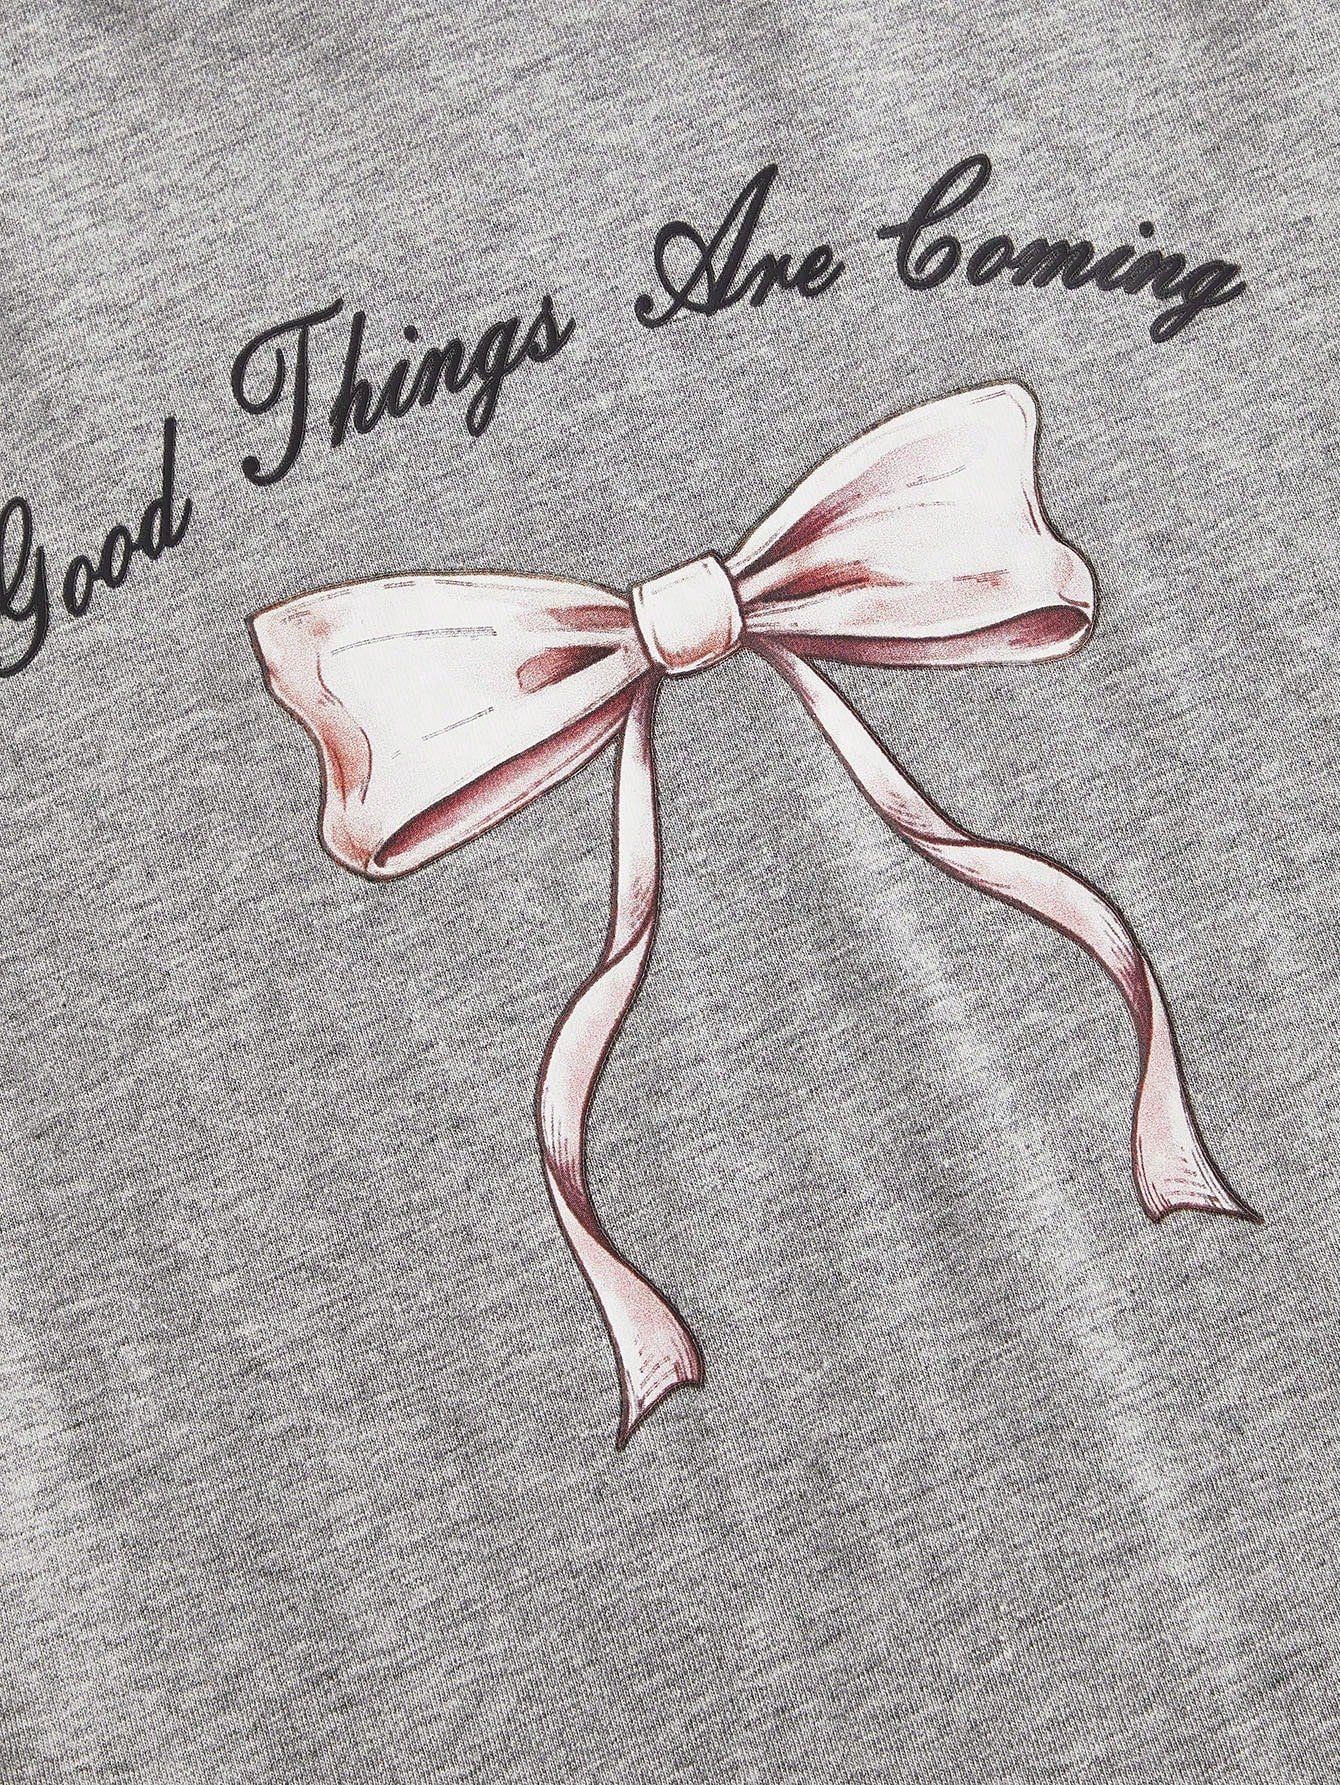 バレエ系tシャツ 白色 クールな可愛さ ピンクのリボンプリント 無地 カジュアル